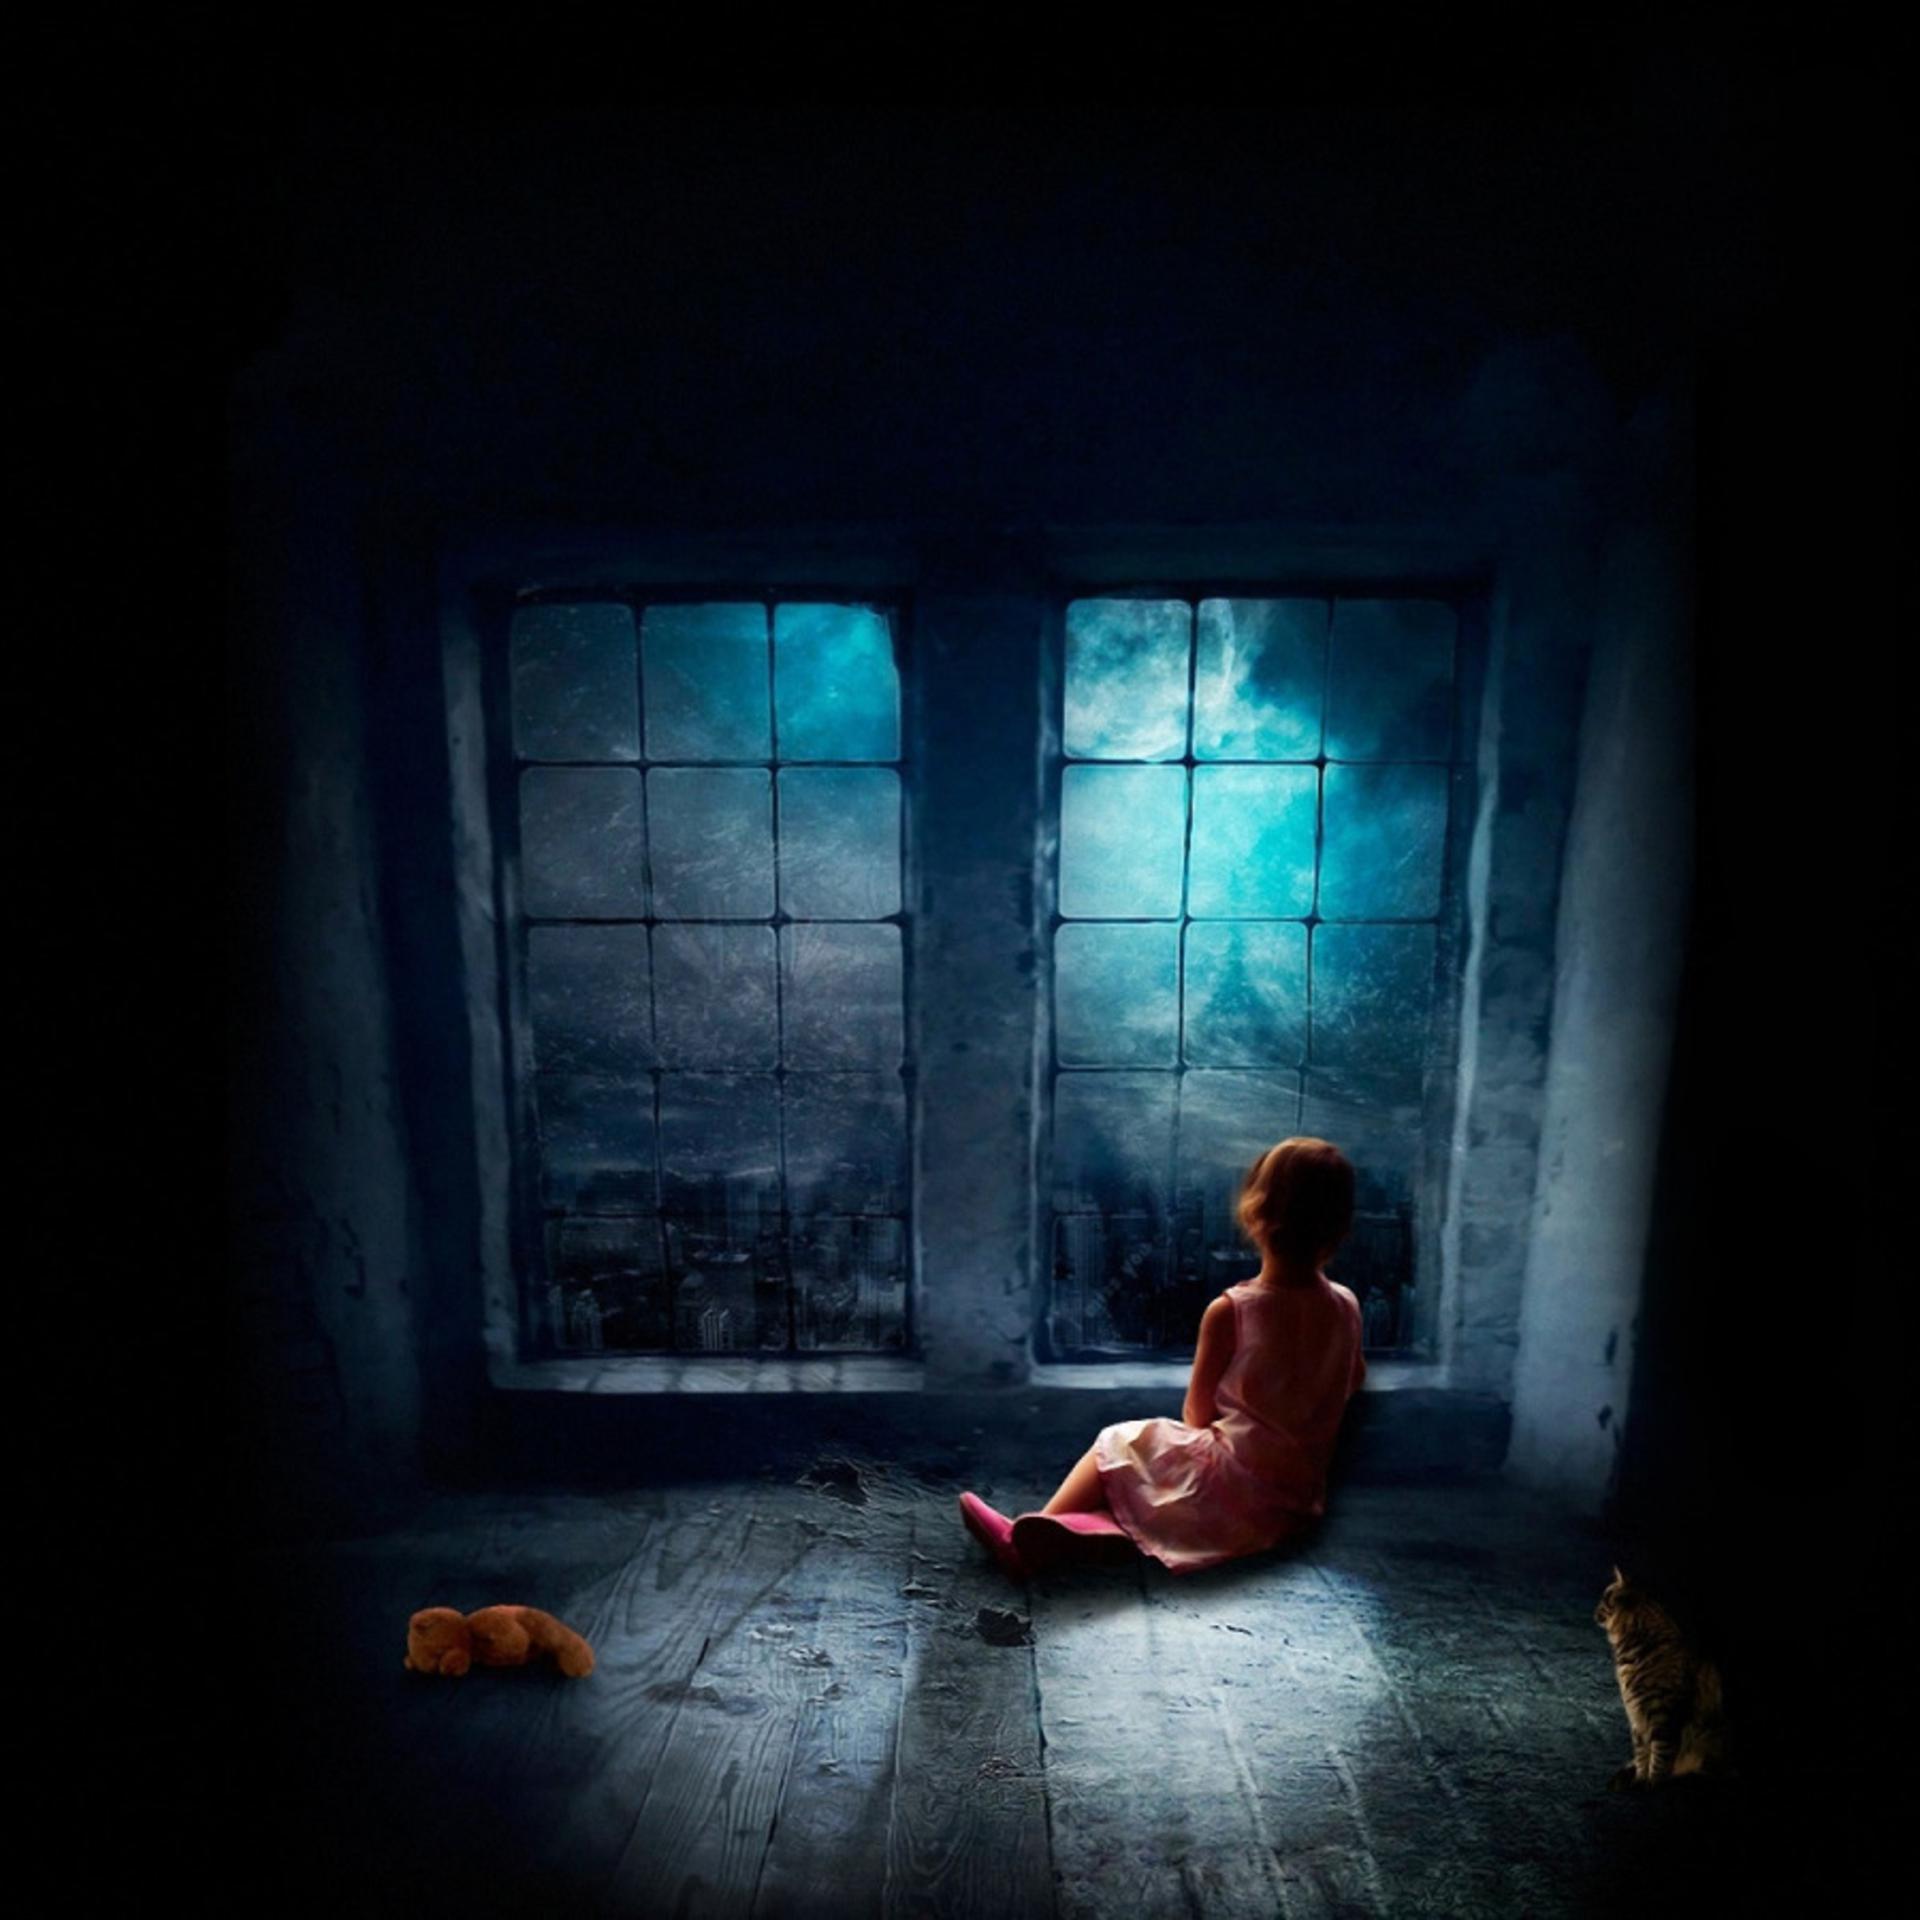 Постер альбома Маленькая девочка